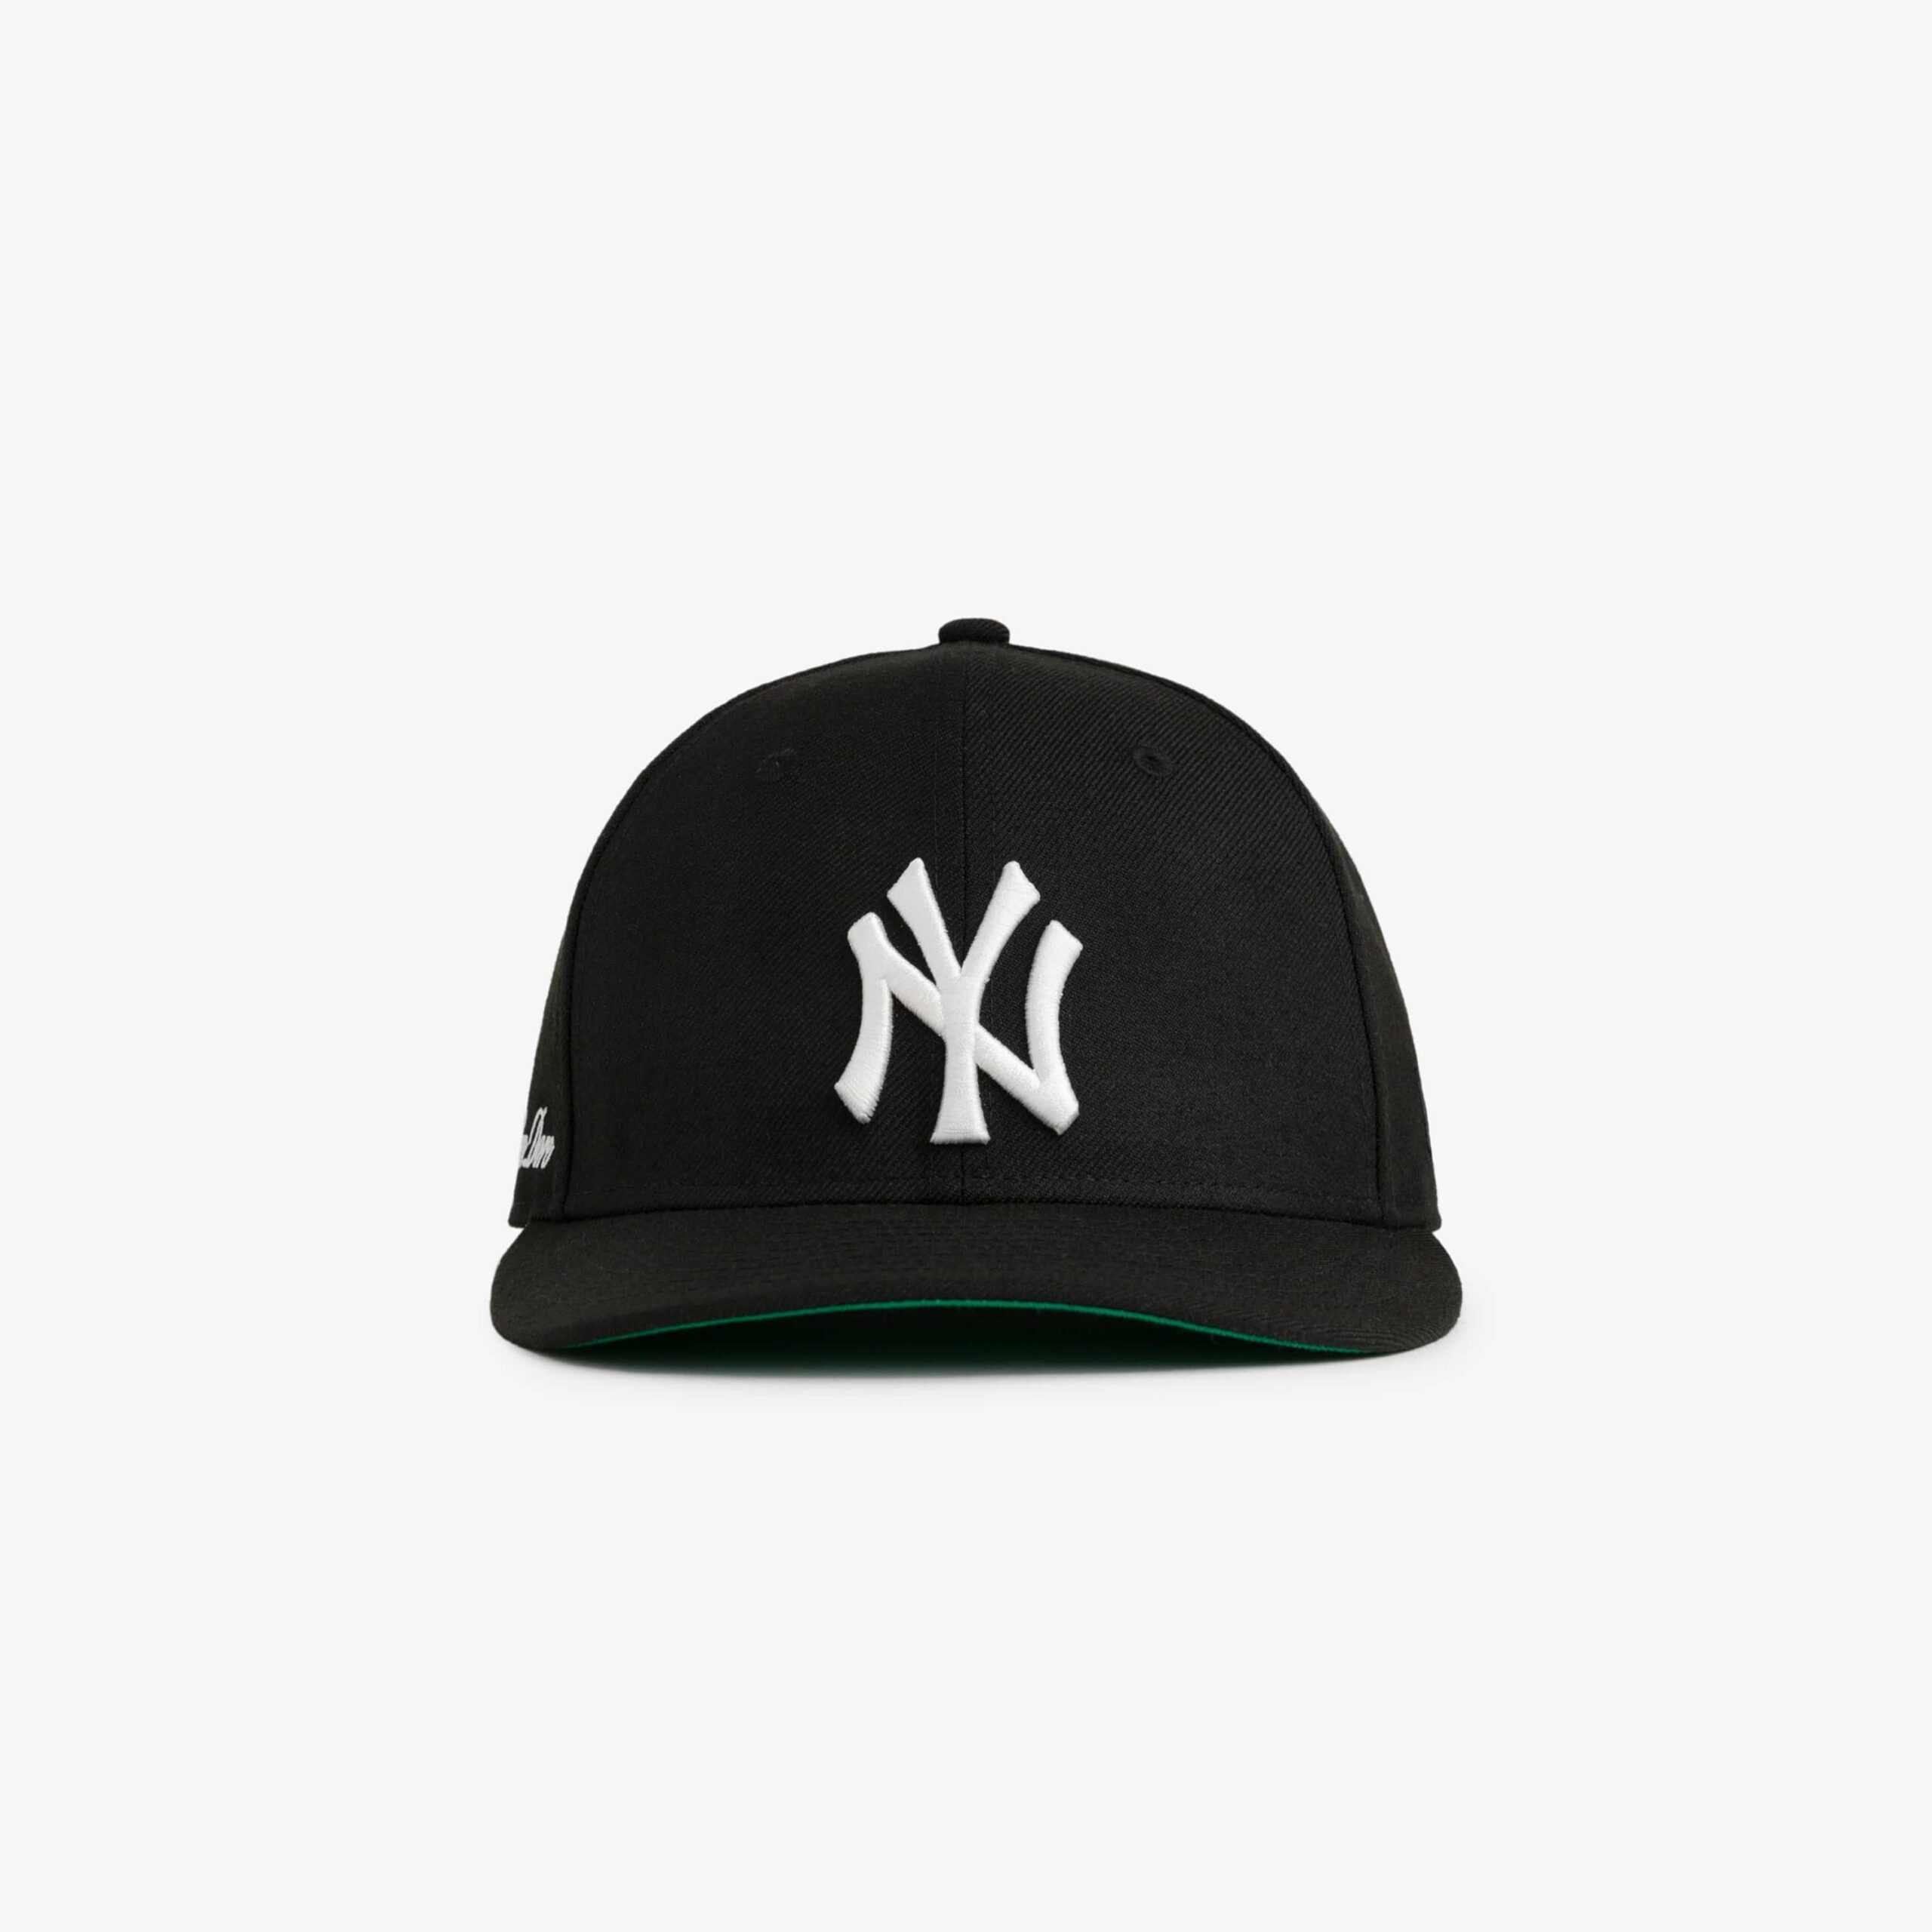 Aime Leon Dore x New Era Yankees Hat Black scaled